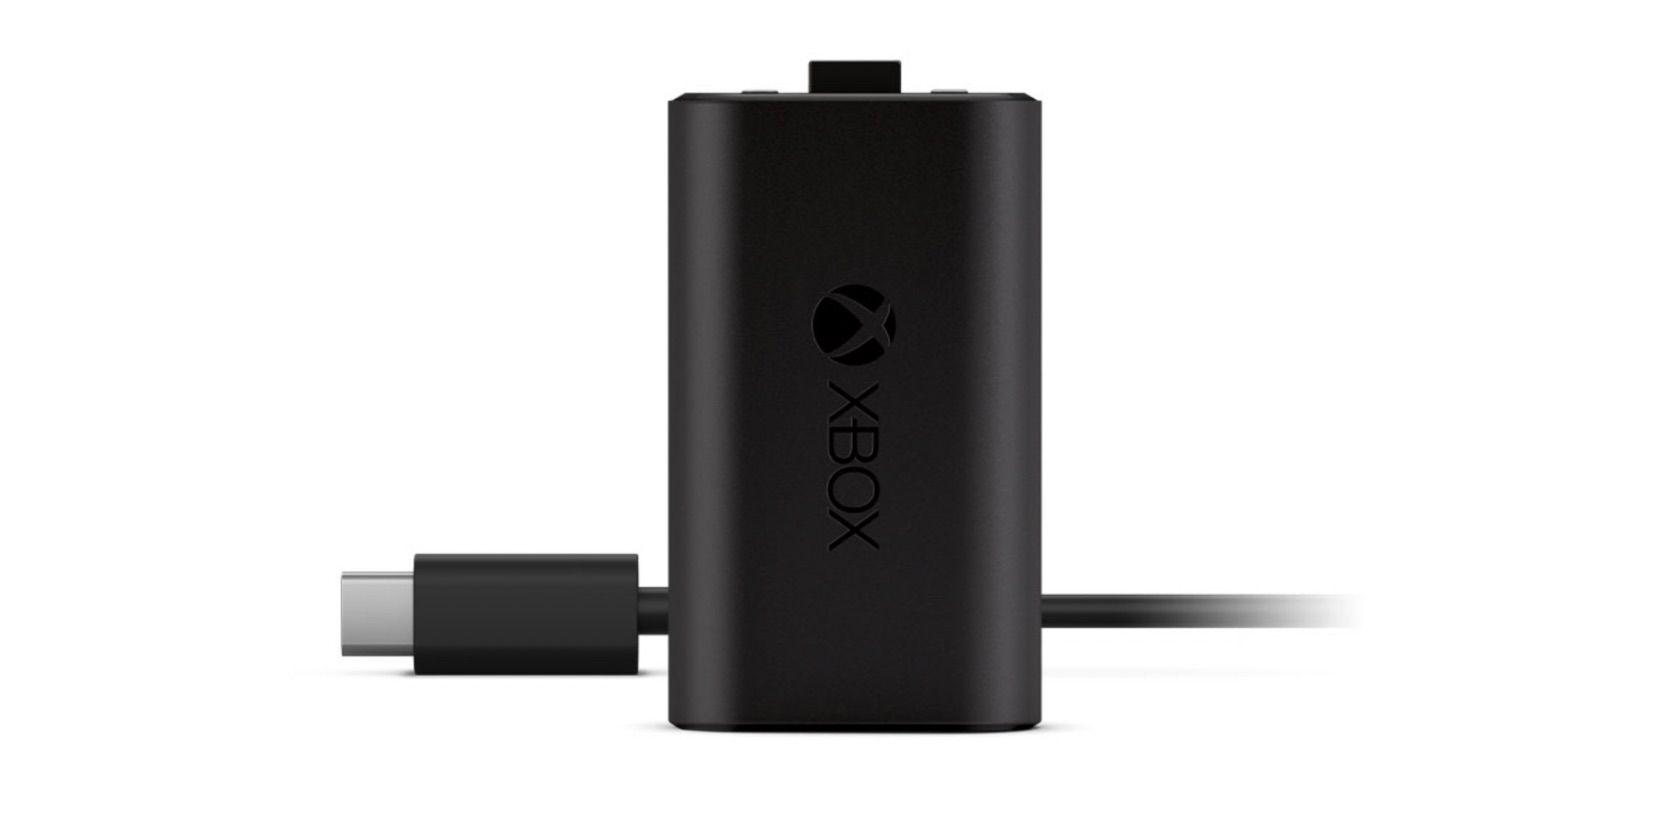 Bateria recarregável Xbox em fundo branco